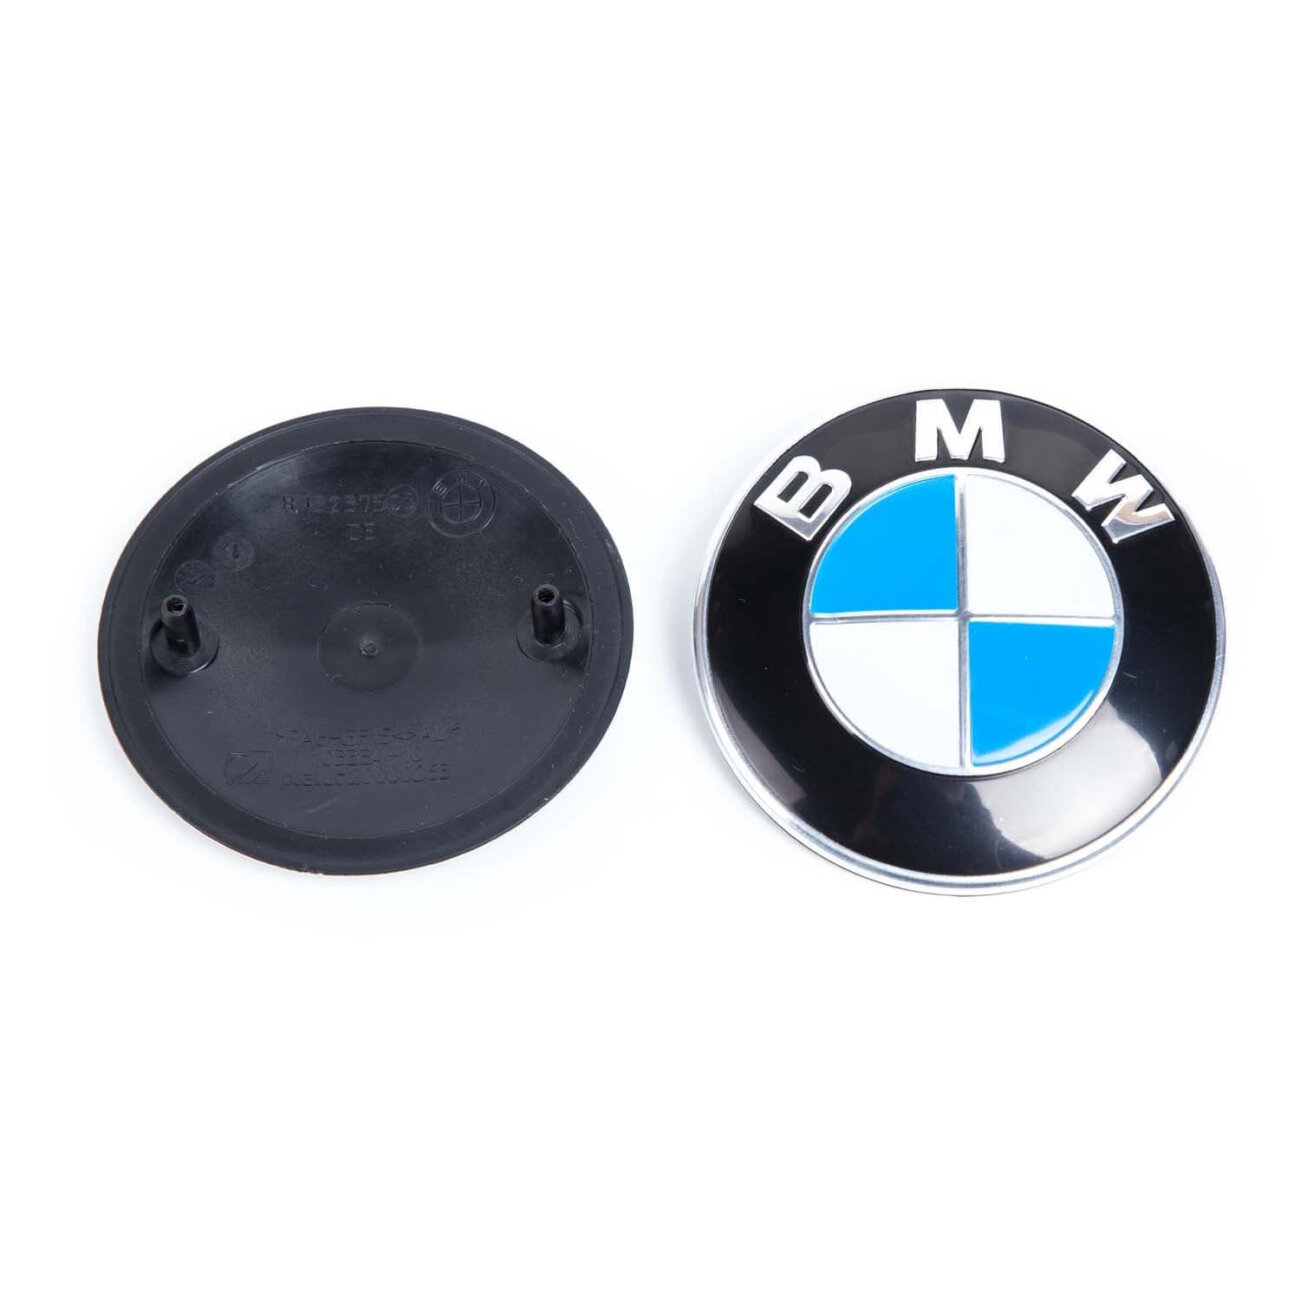 Эмблема для BMW классика 82 мм алюминиевая